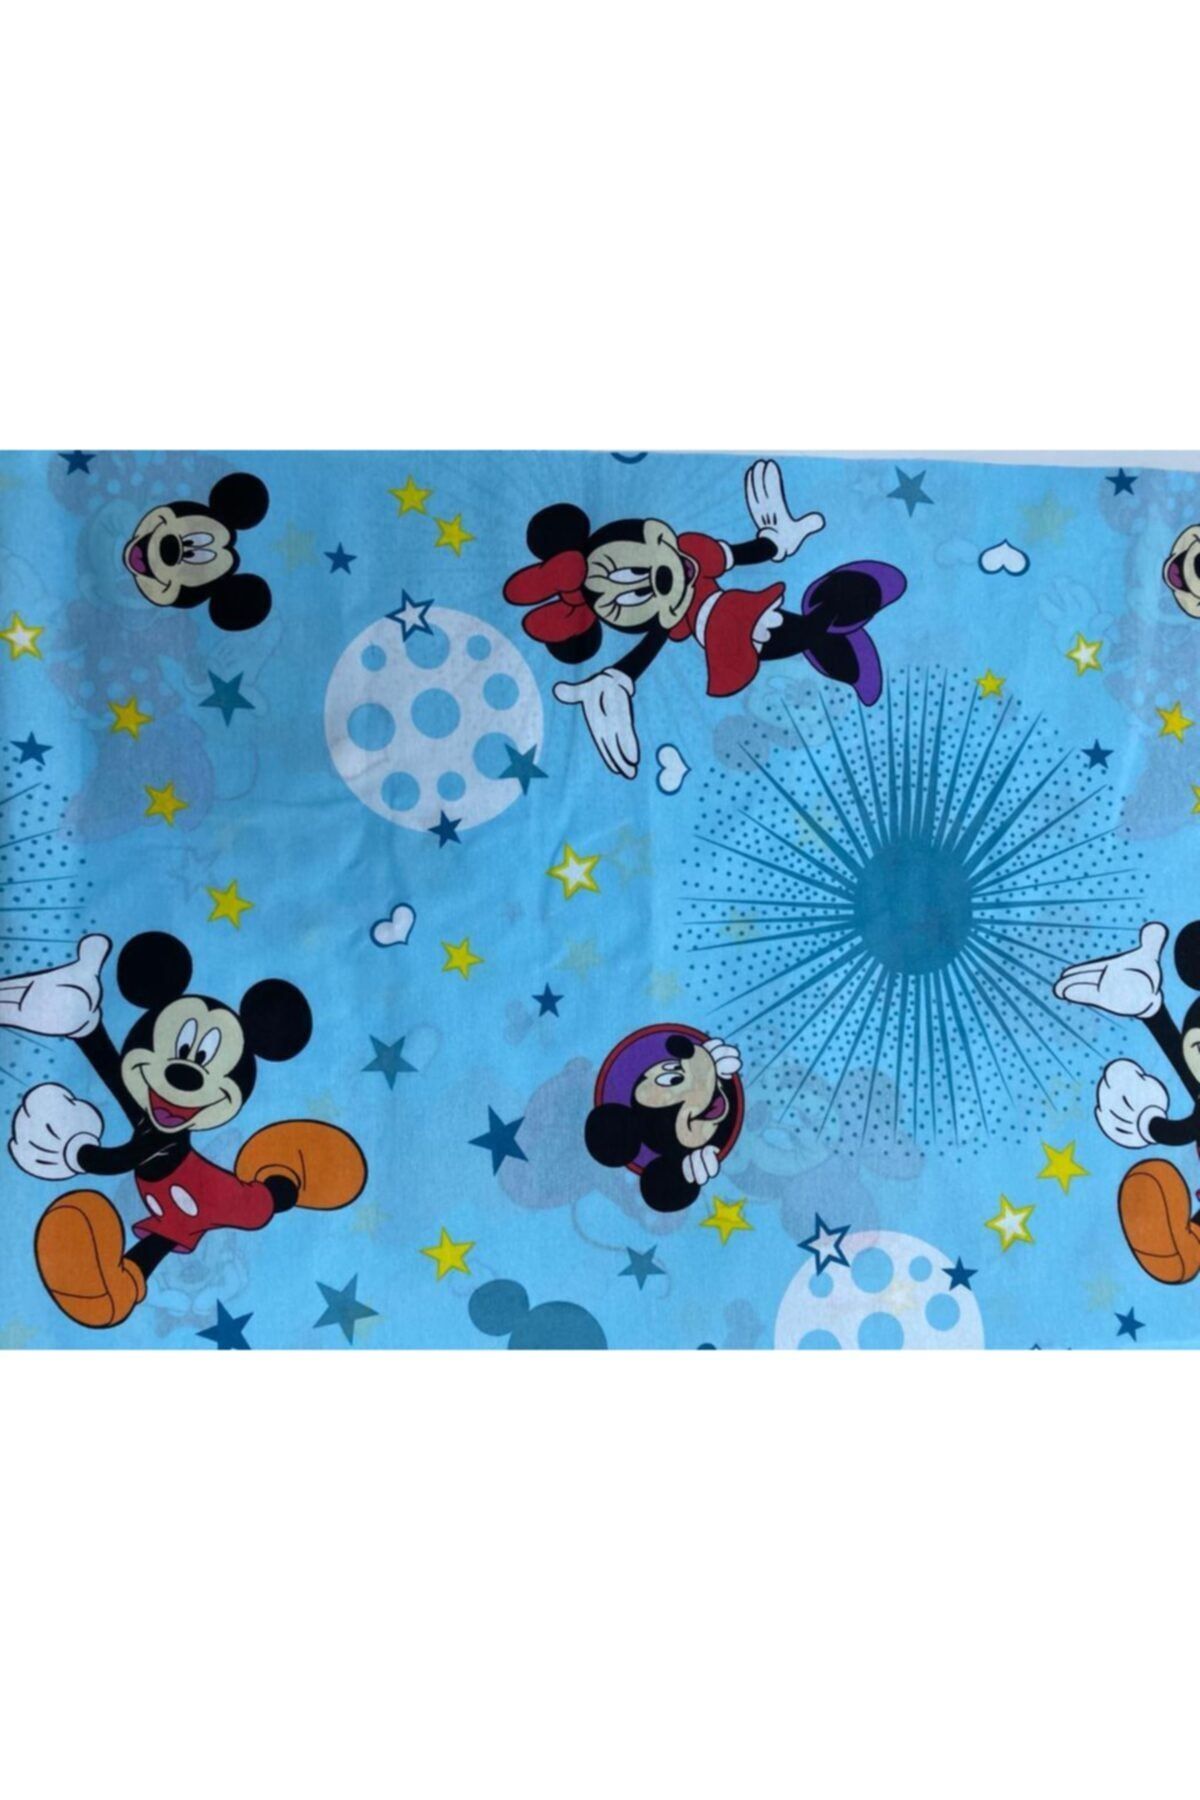 Pınar Home Mavi Dokuma Mickey Mouse Ara Boy Lastikli Çarşaf 120x200 cm 1 Adet Kapaklı Yastık Kılıfı